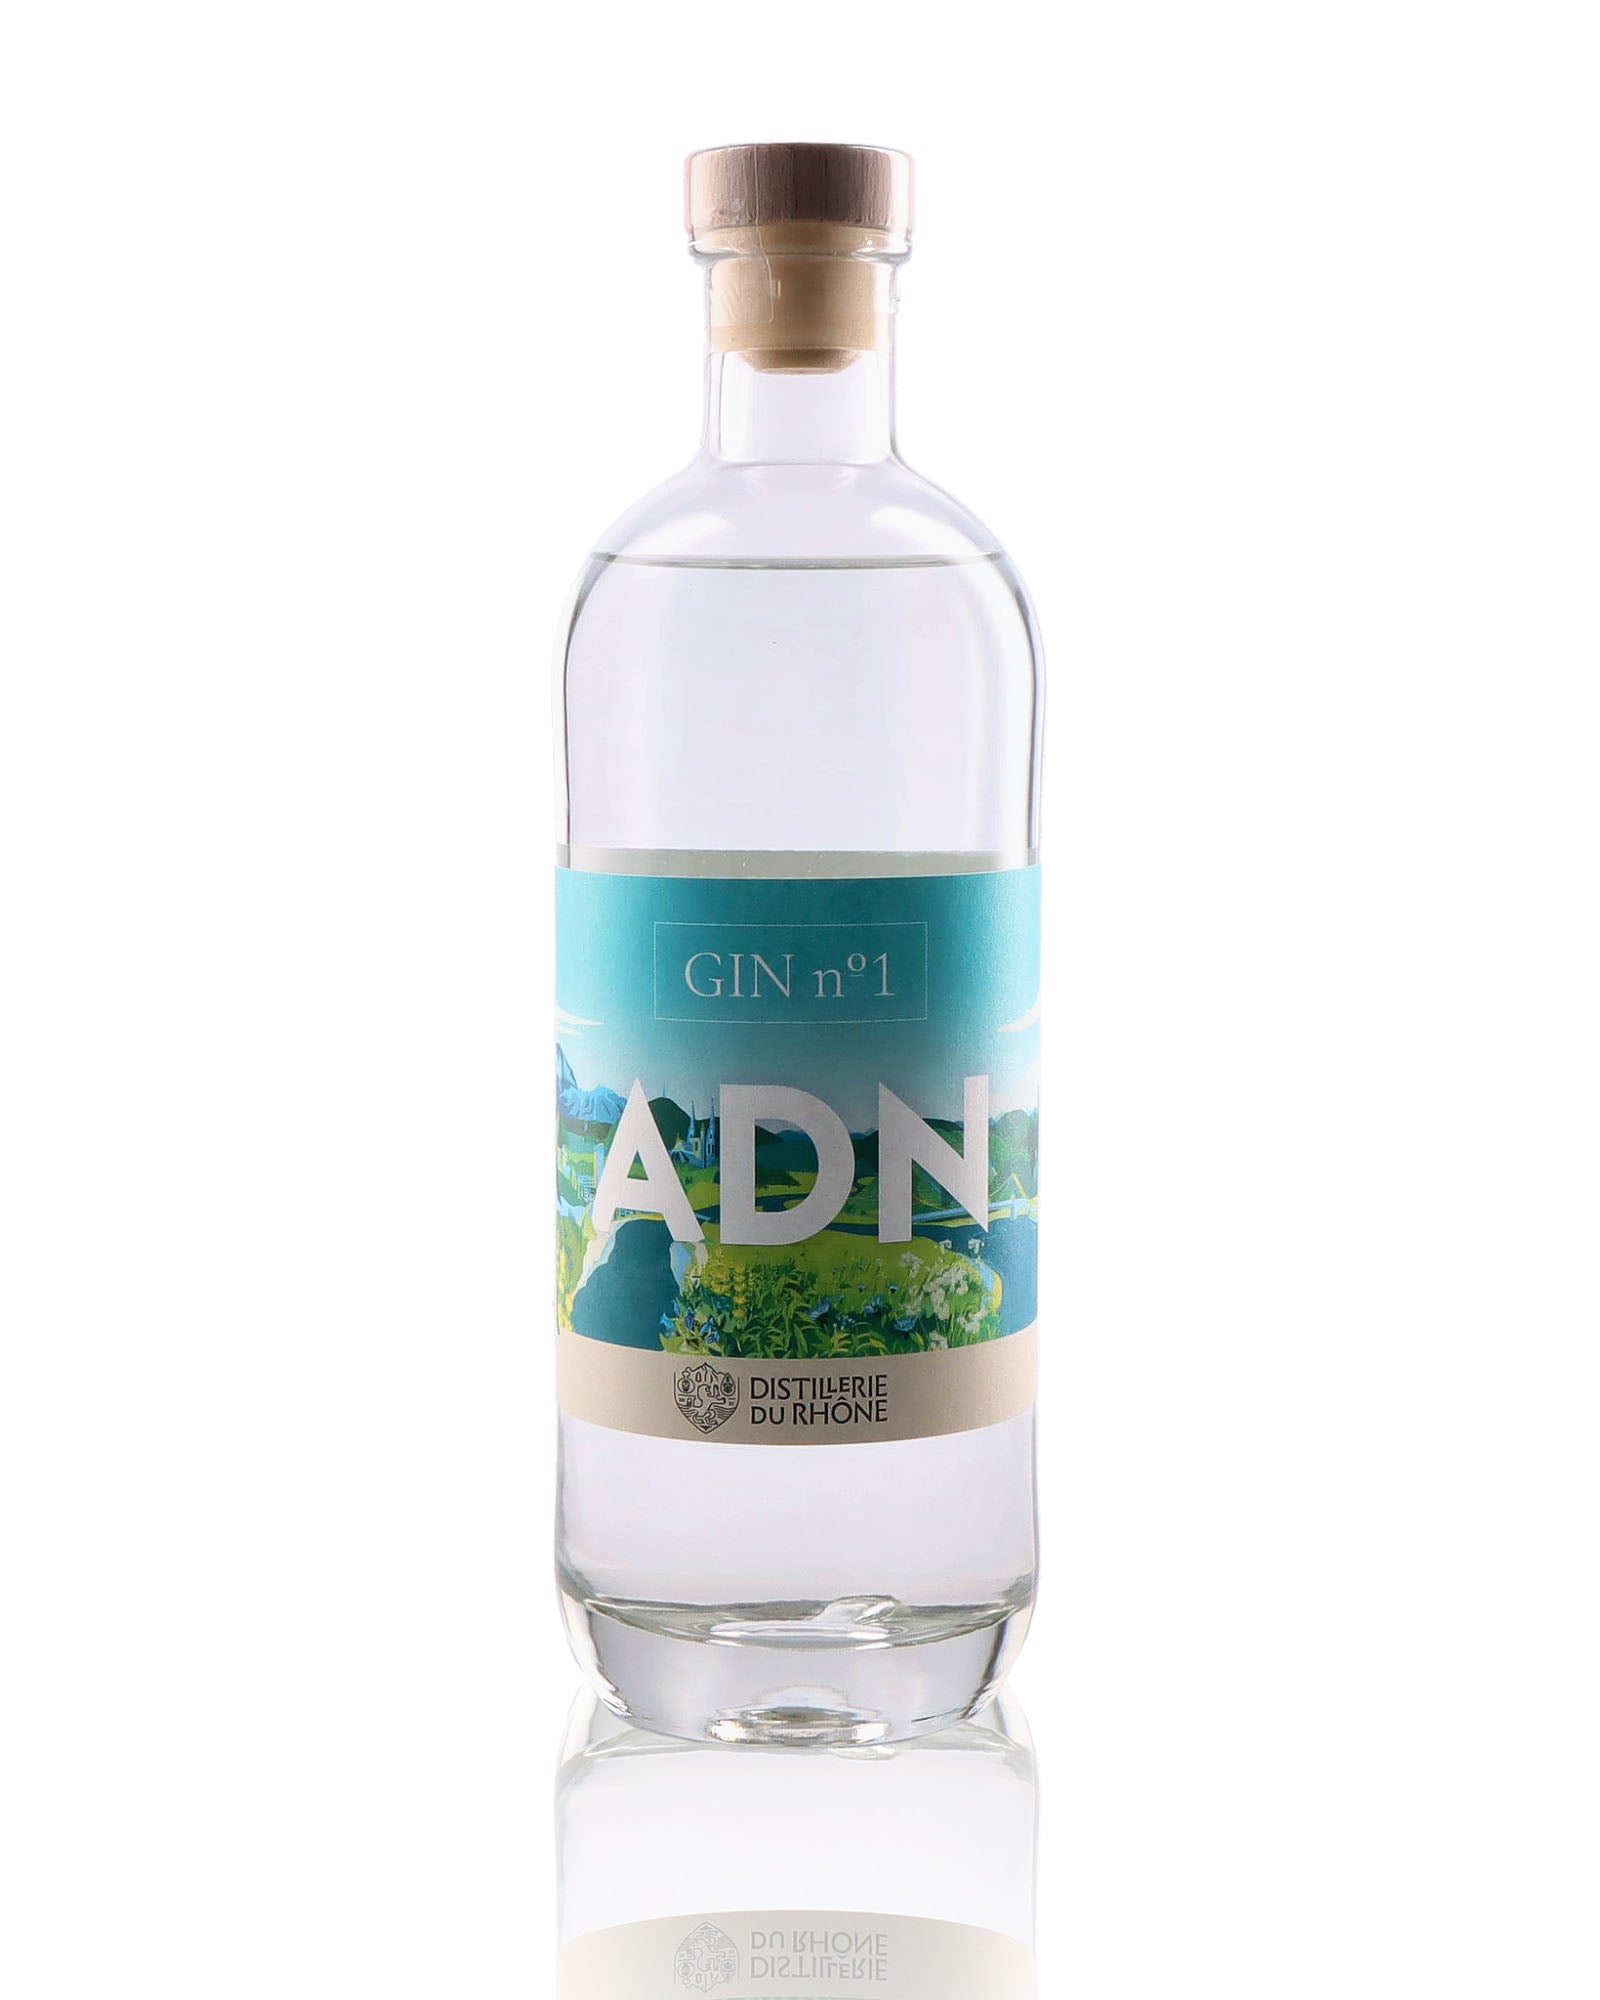 Une bouteille de Gin, de la marque ADN, nommée N°1.